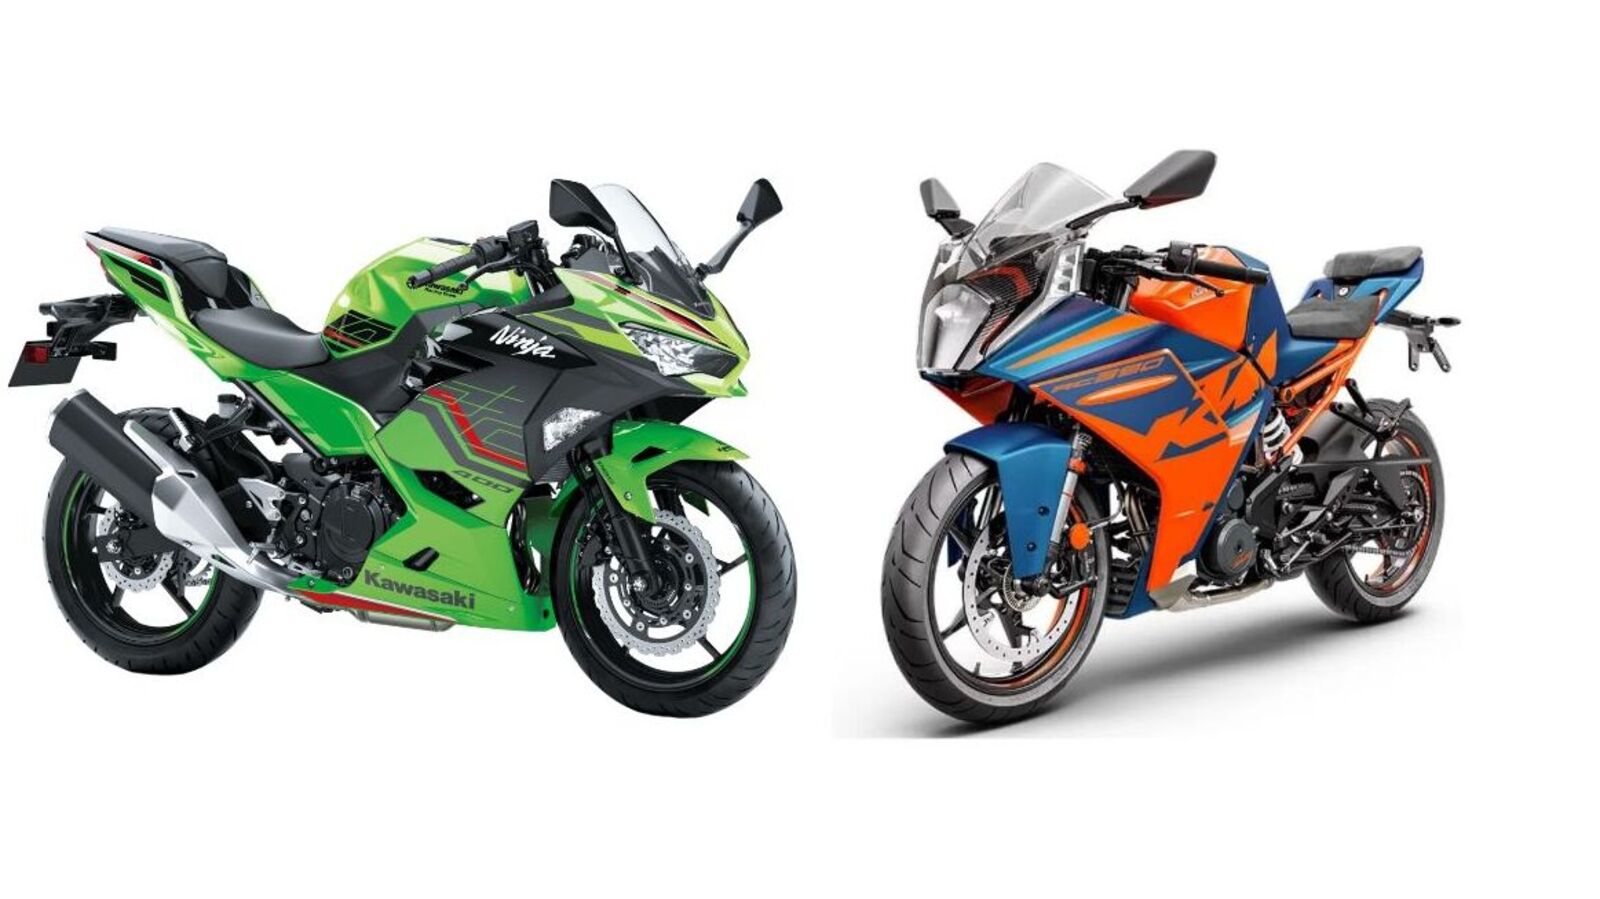 2022 Kawasaki Ninja 400 vs KTM RC 390: Price, specification ...